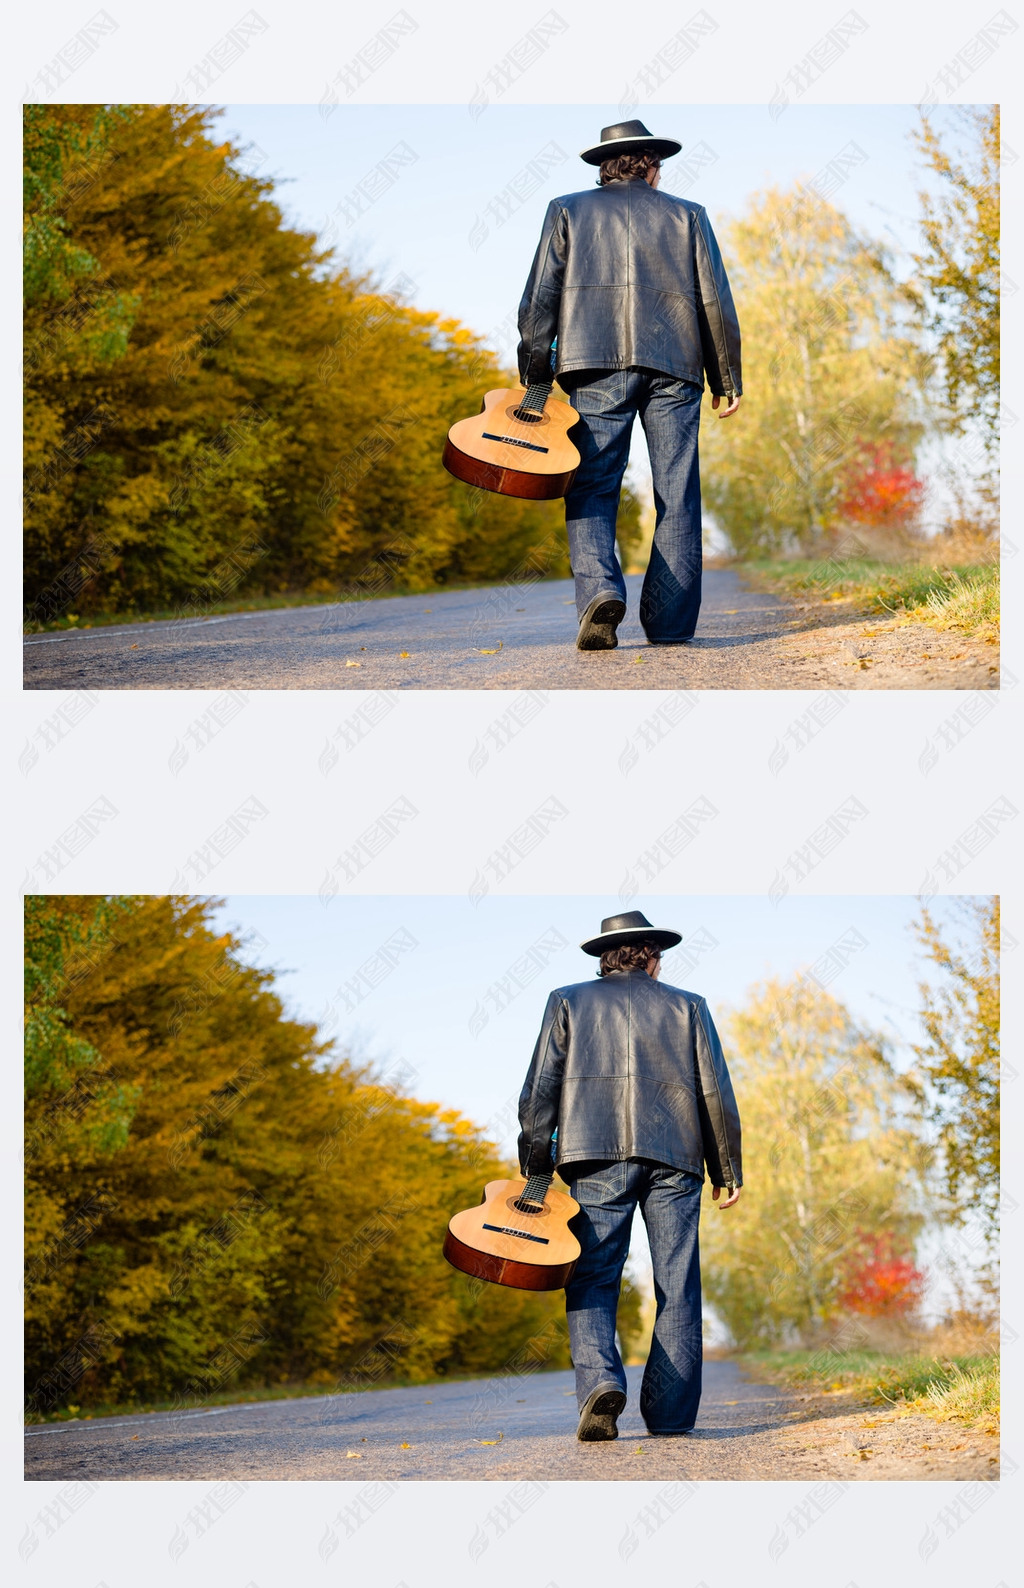 Man holding guitar and walking away